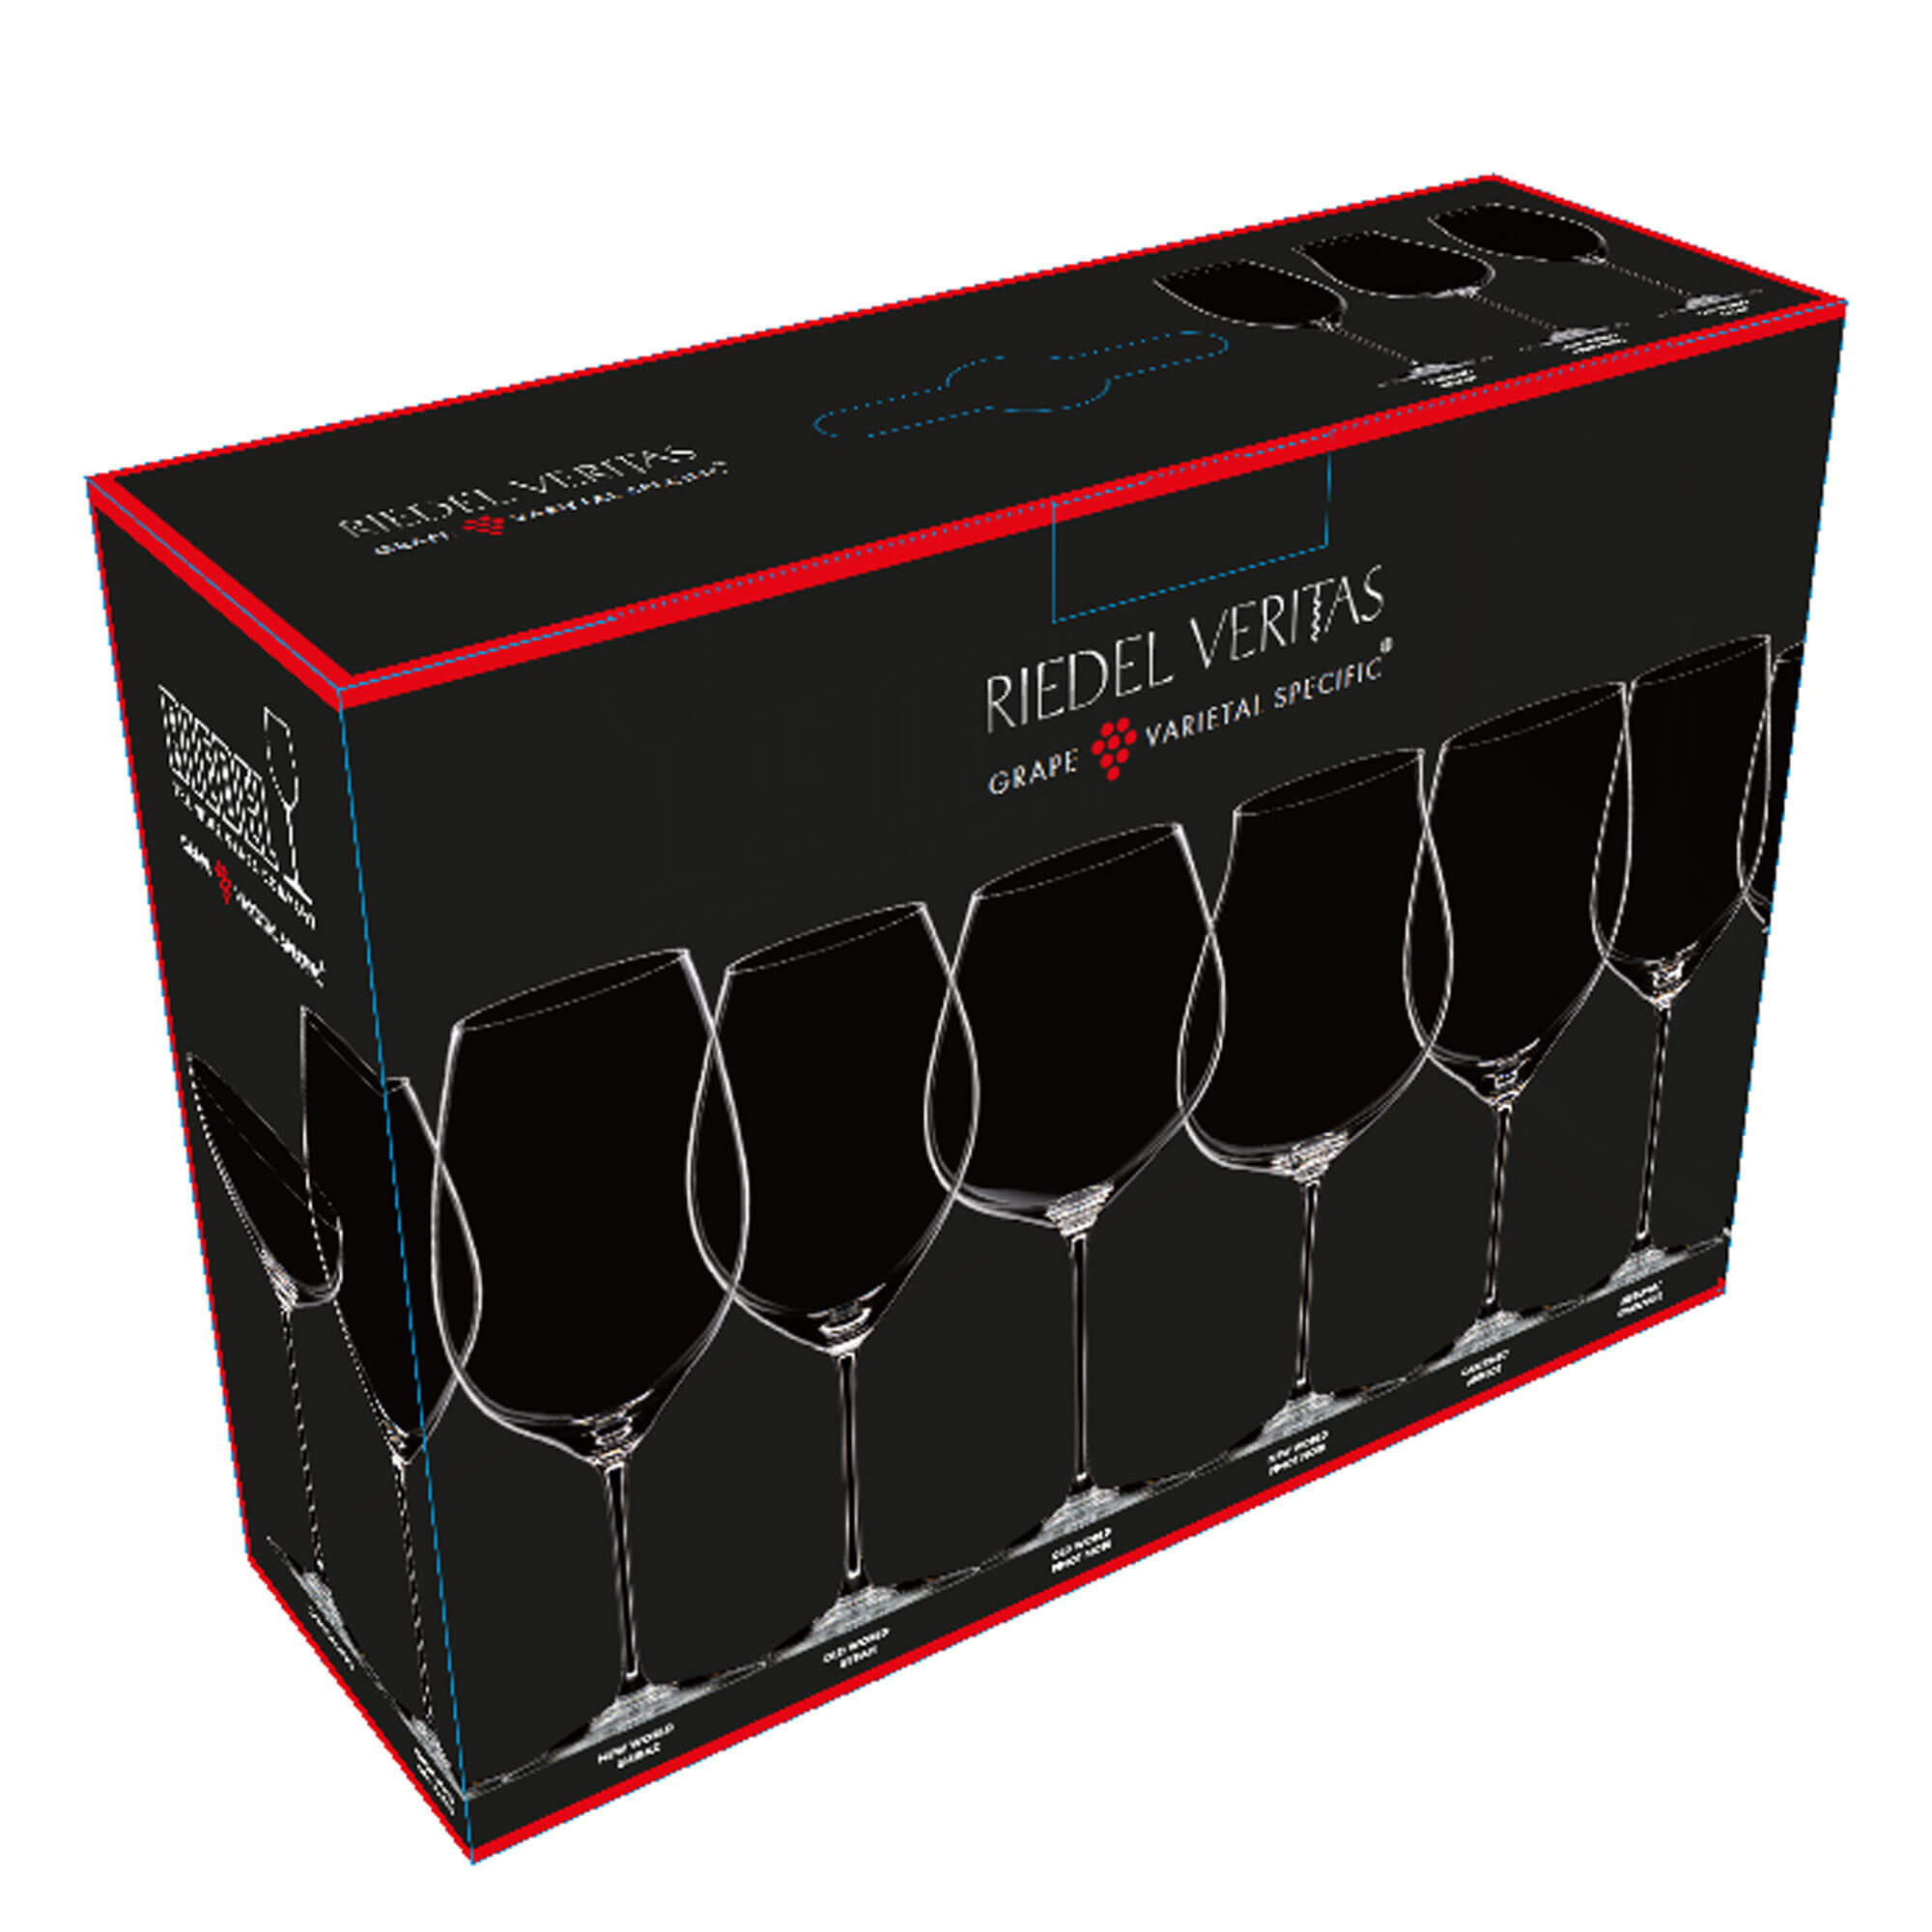 Rotwein Tasting Set Veritas, Riedel (3 Stk.)